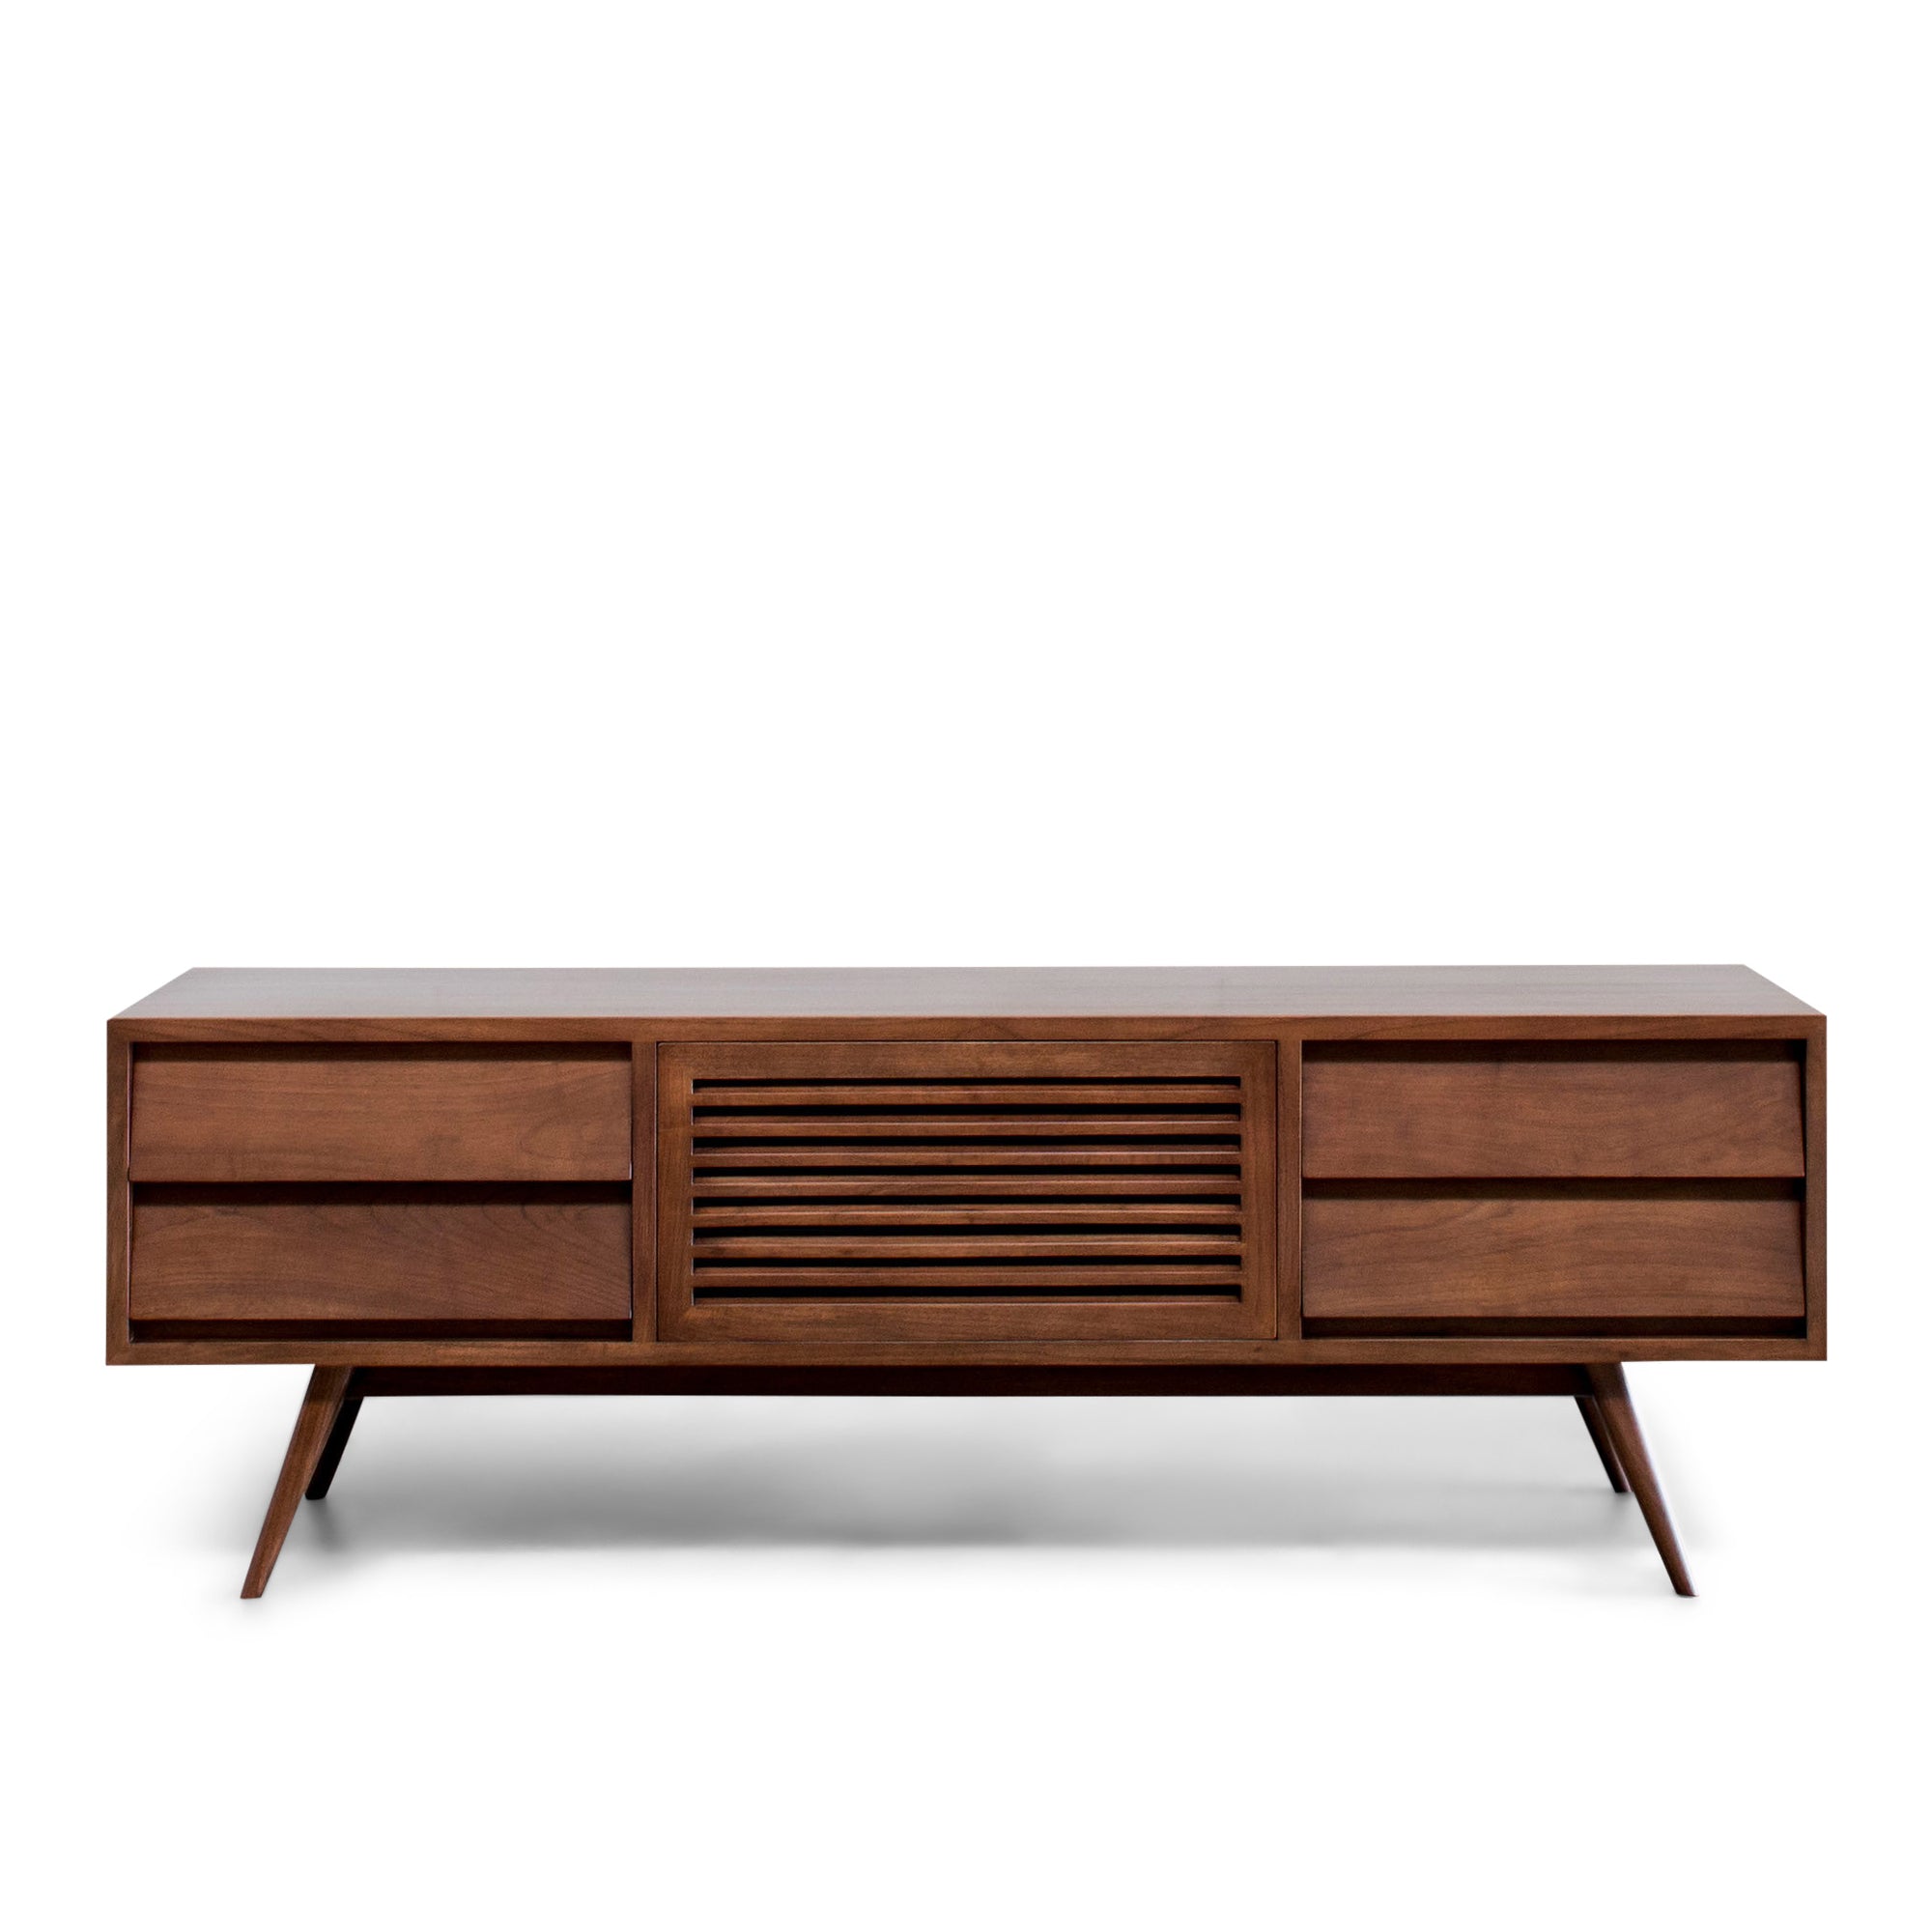 The Best Mid Century Modern Furniture Design